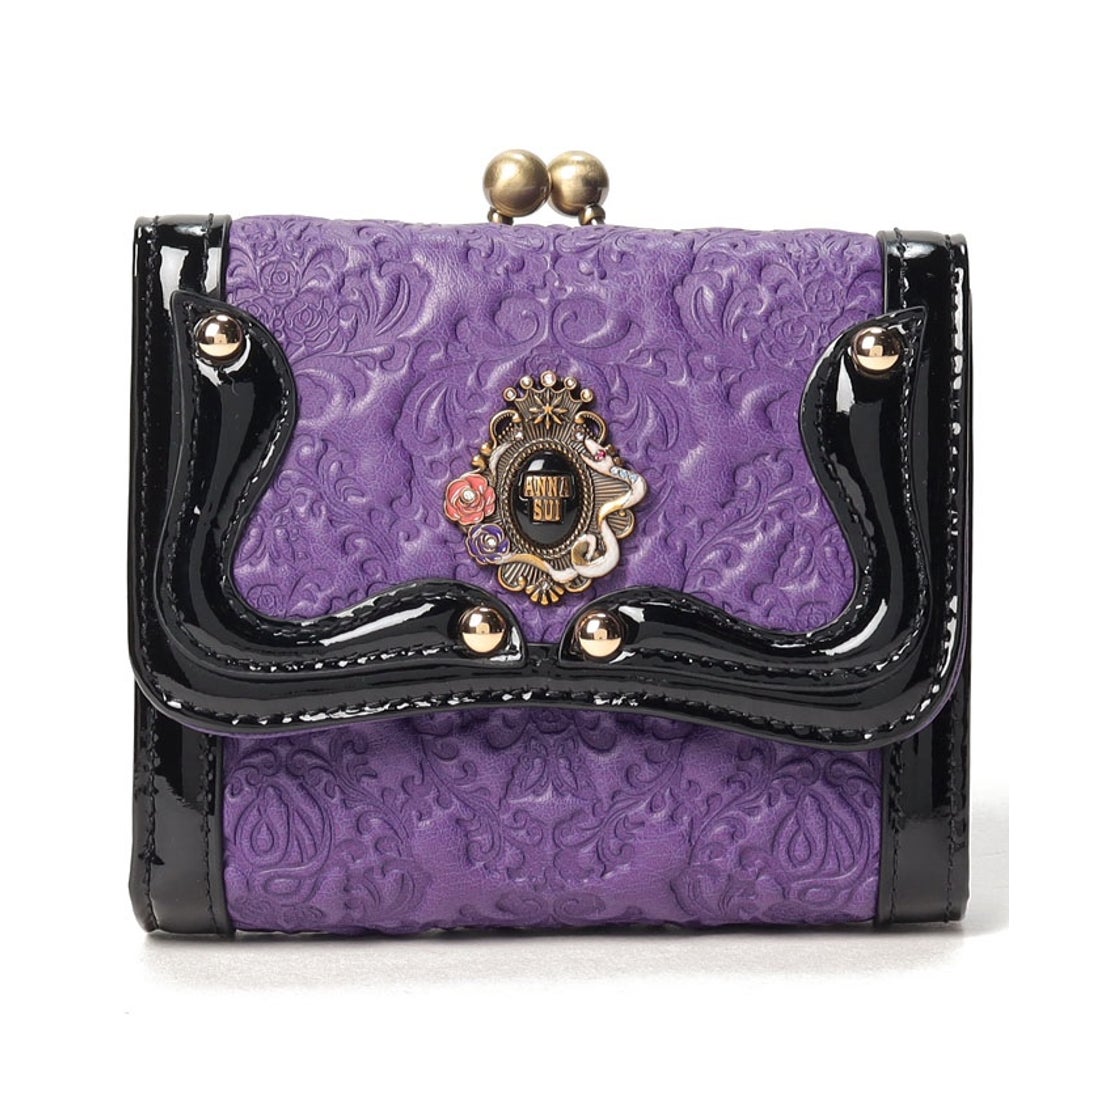 ANNA SUI セルパン 二つ折り口金財布 パープル -ファッション通販